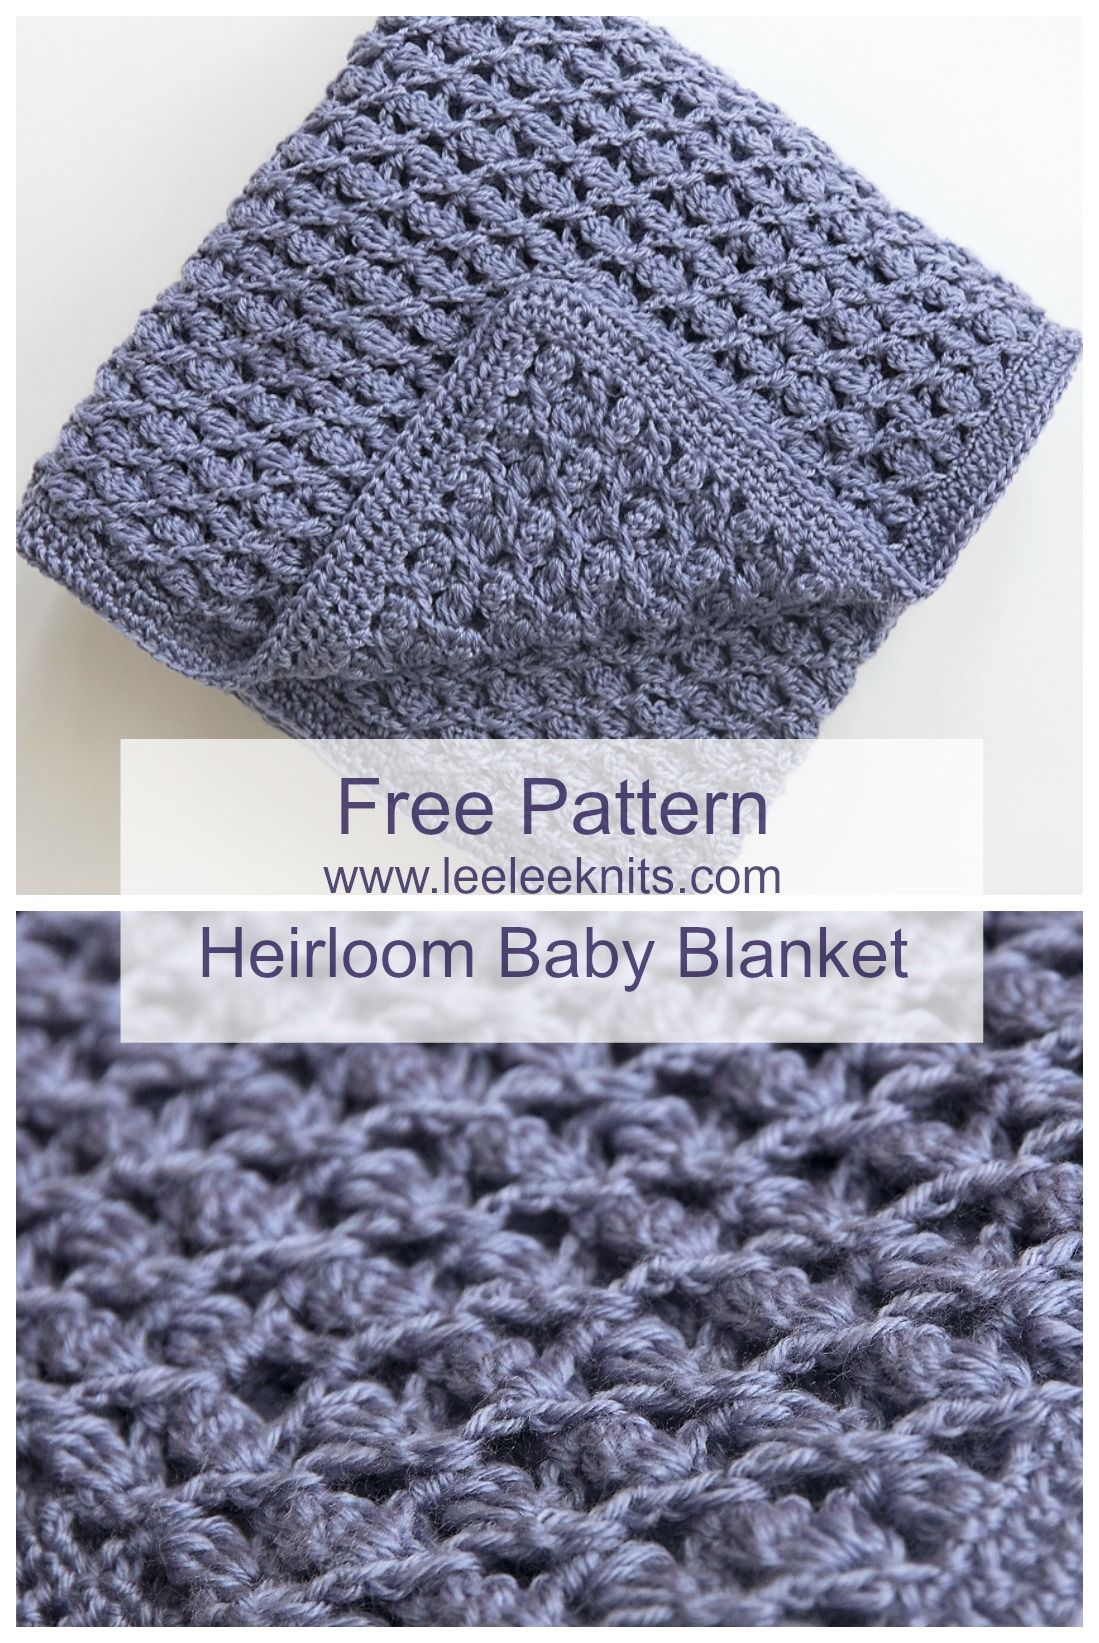 Crochet Patterns For Babies Free Heirloom Ba Blanket Crochet Pattern Crochet Pinterest